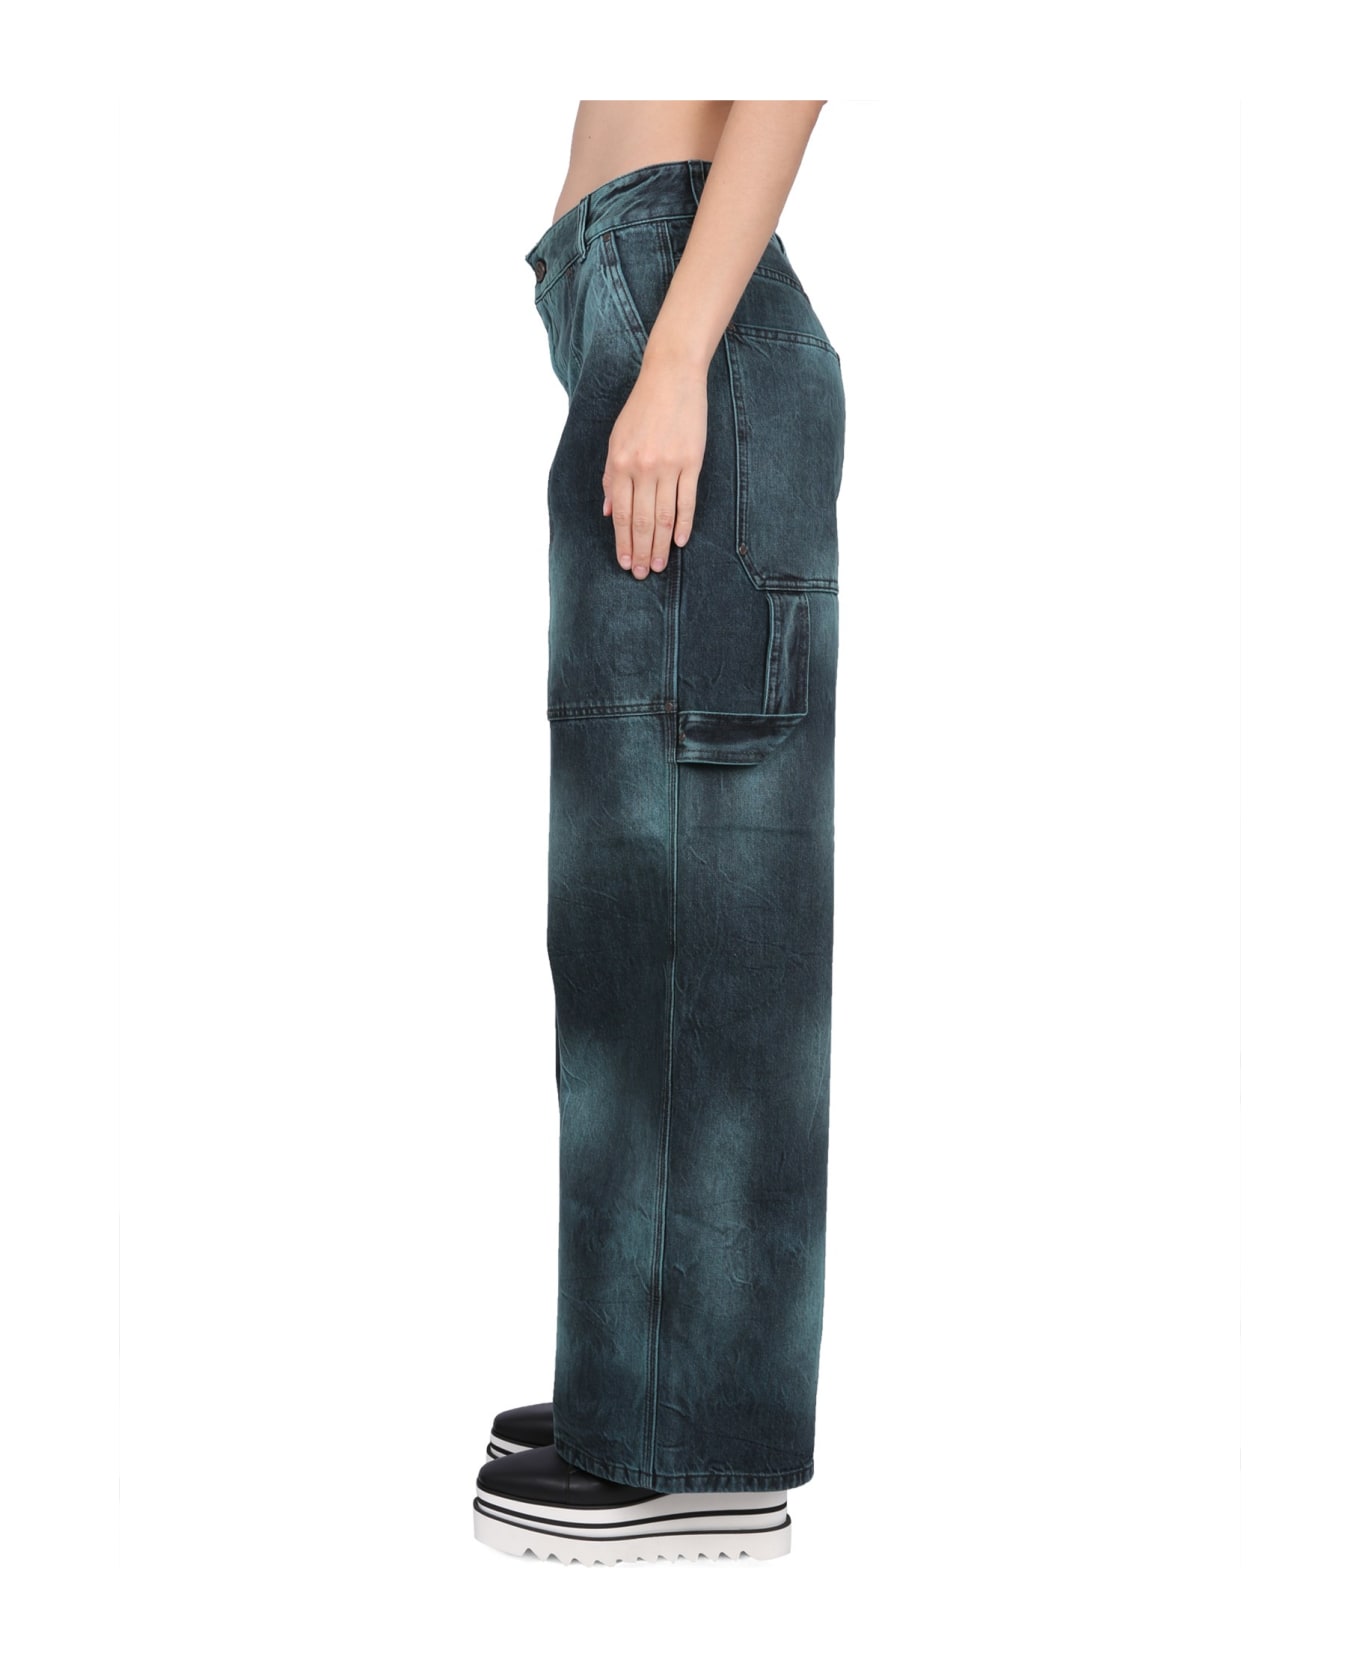 Stella McCartney Jeans Workwear - green